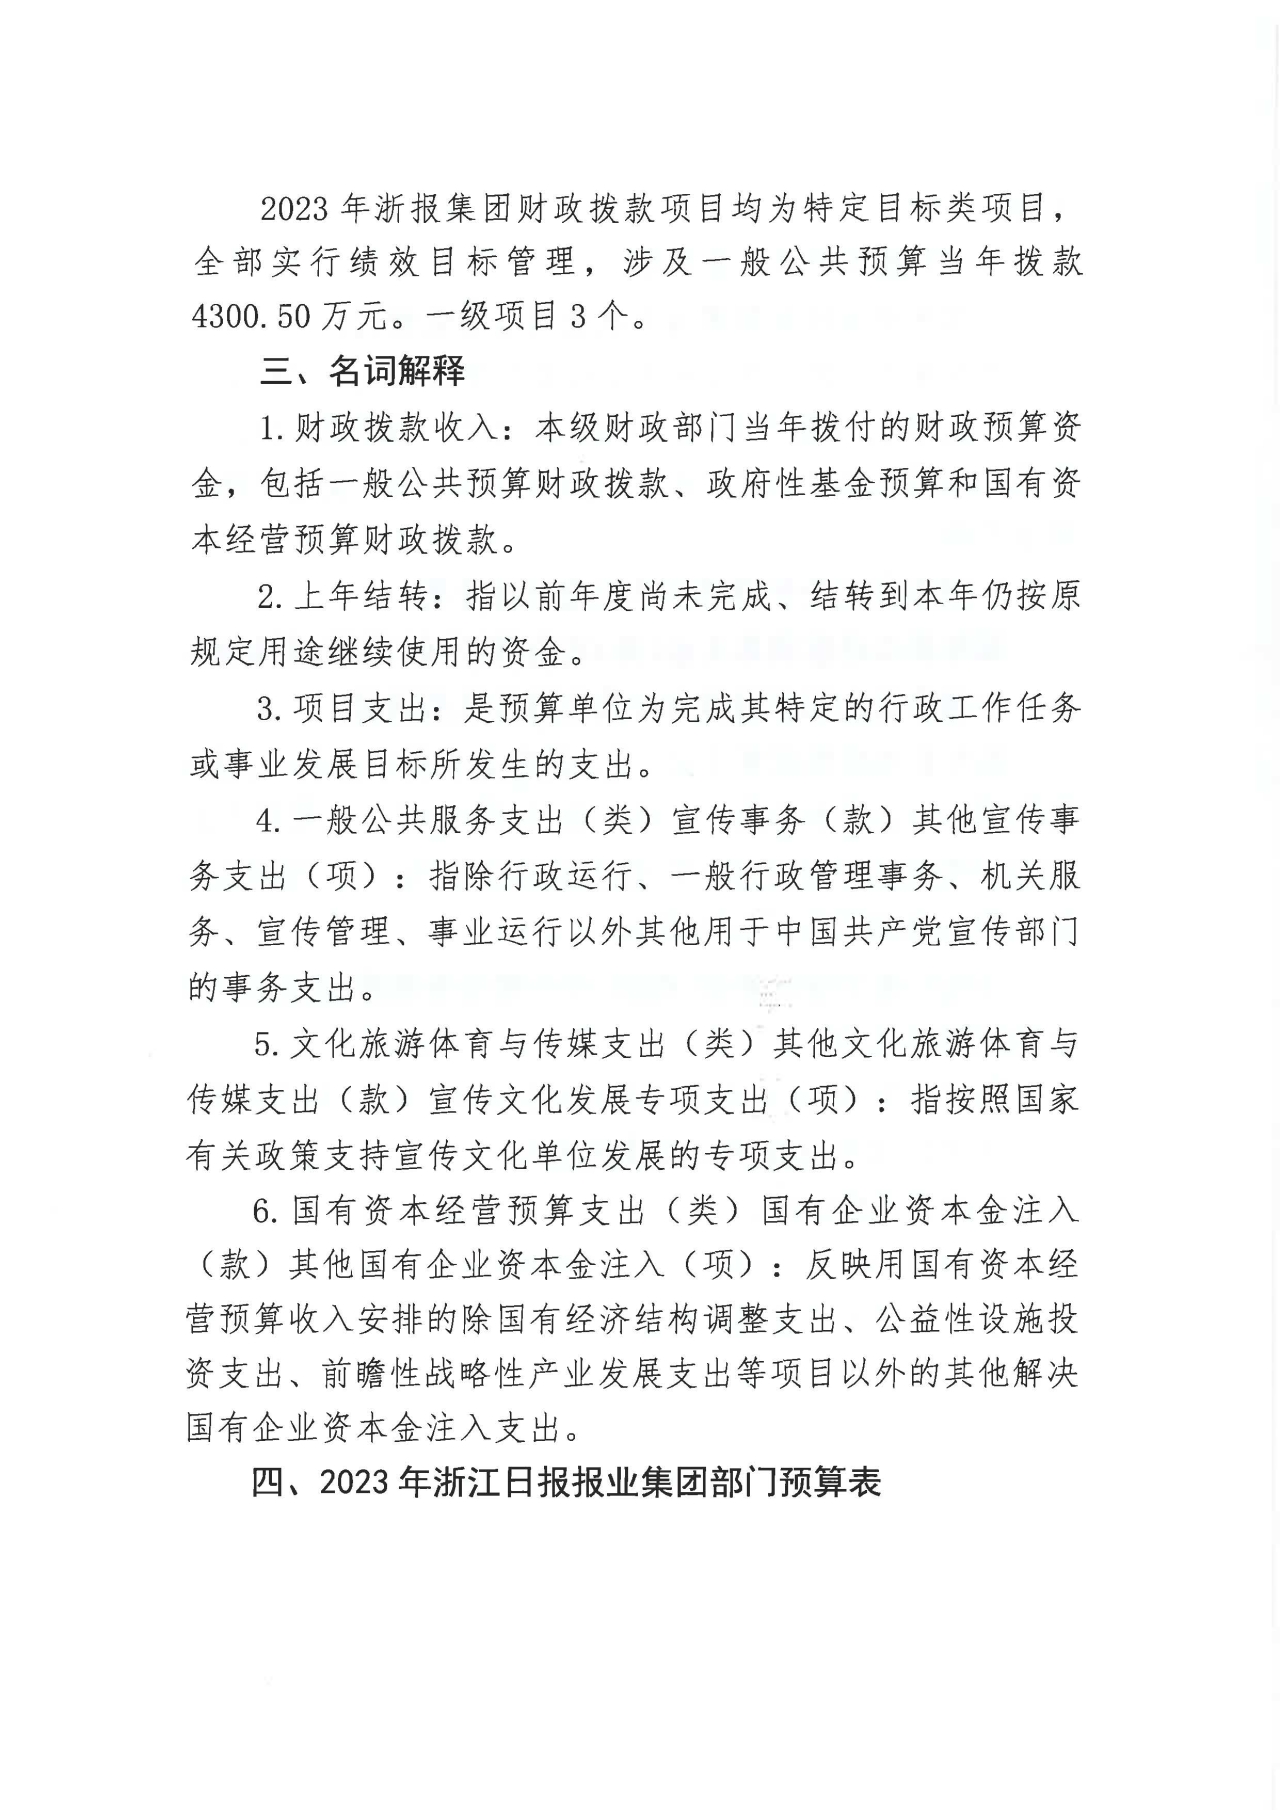 浙江日报报业集团2023年部门预算公开_页面_08.jpg